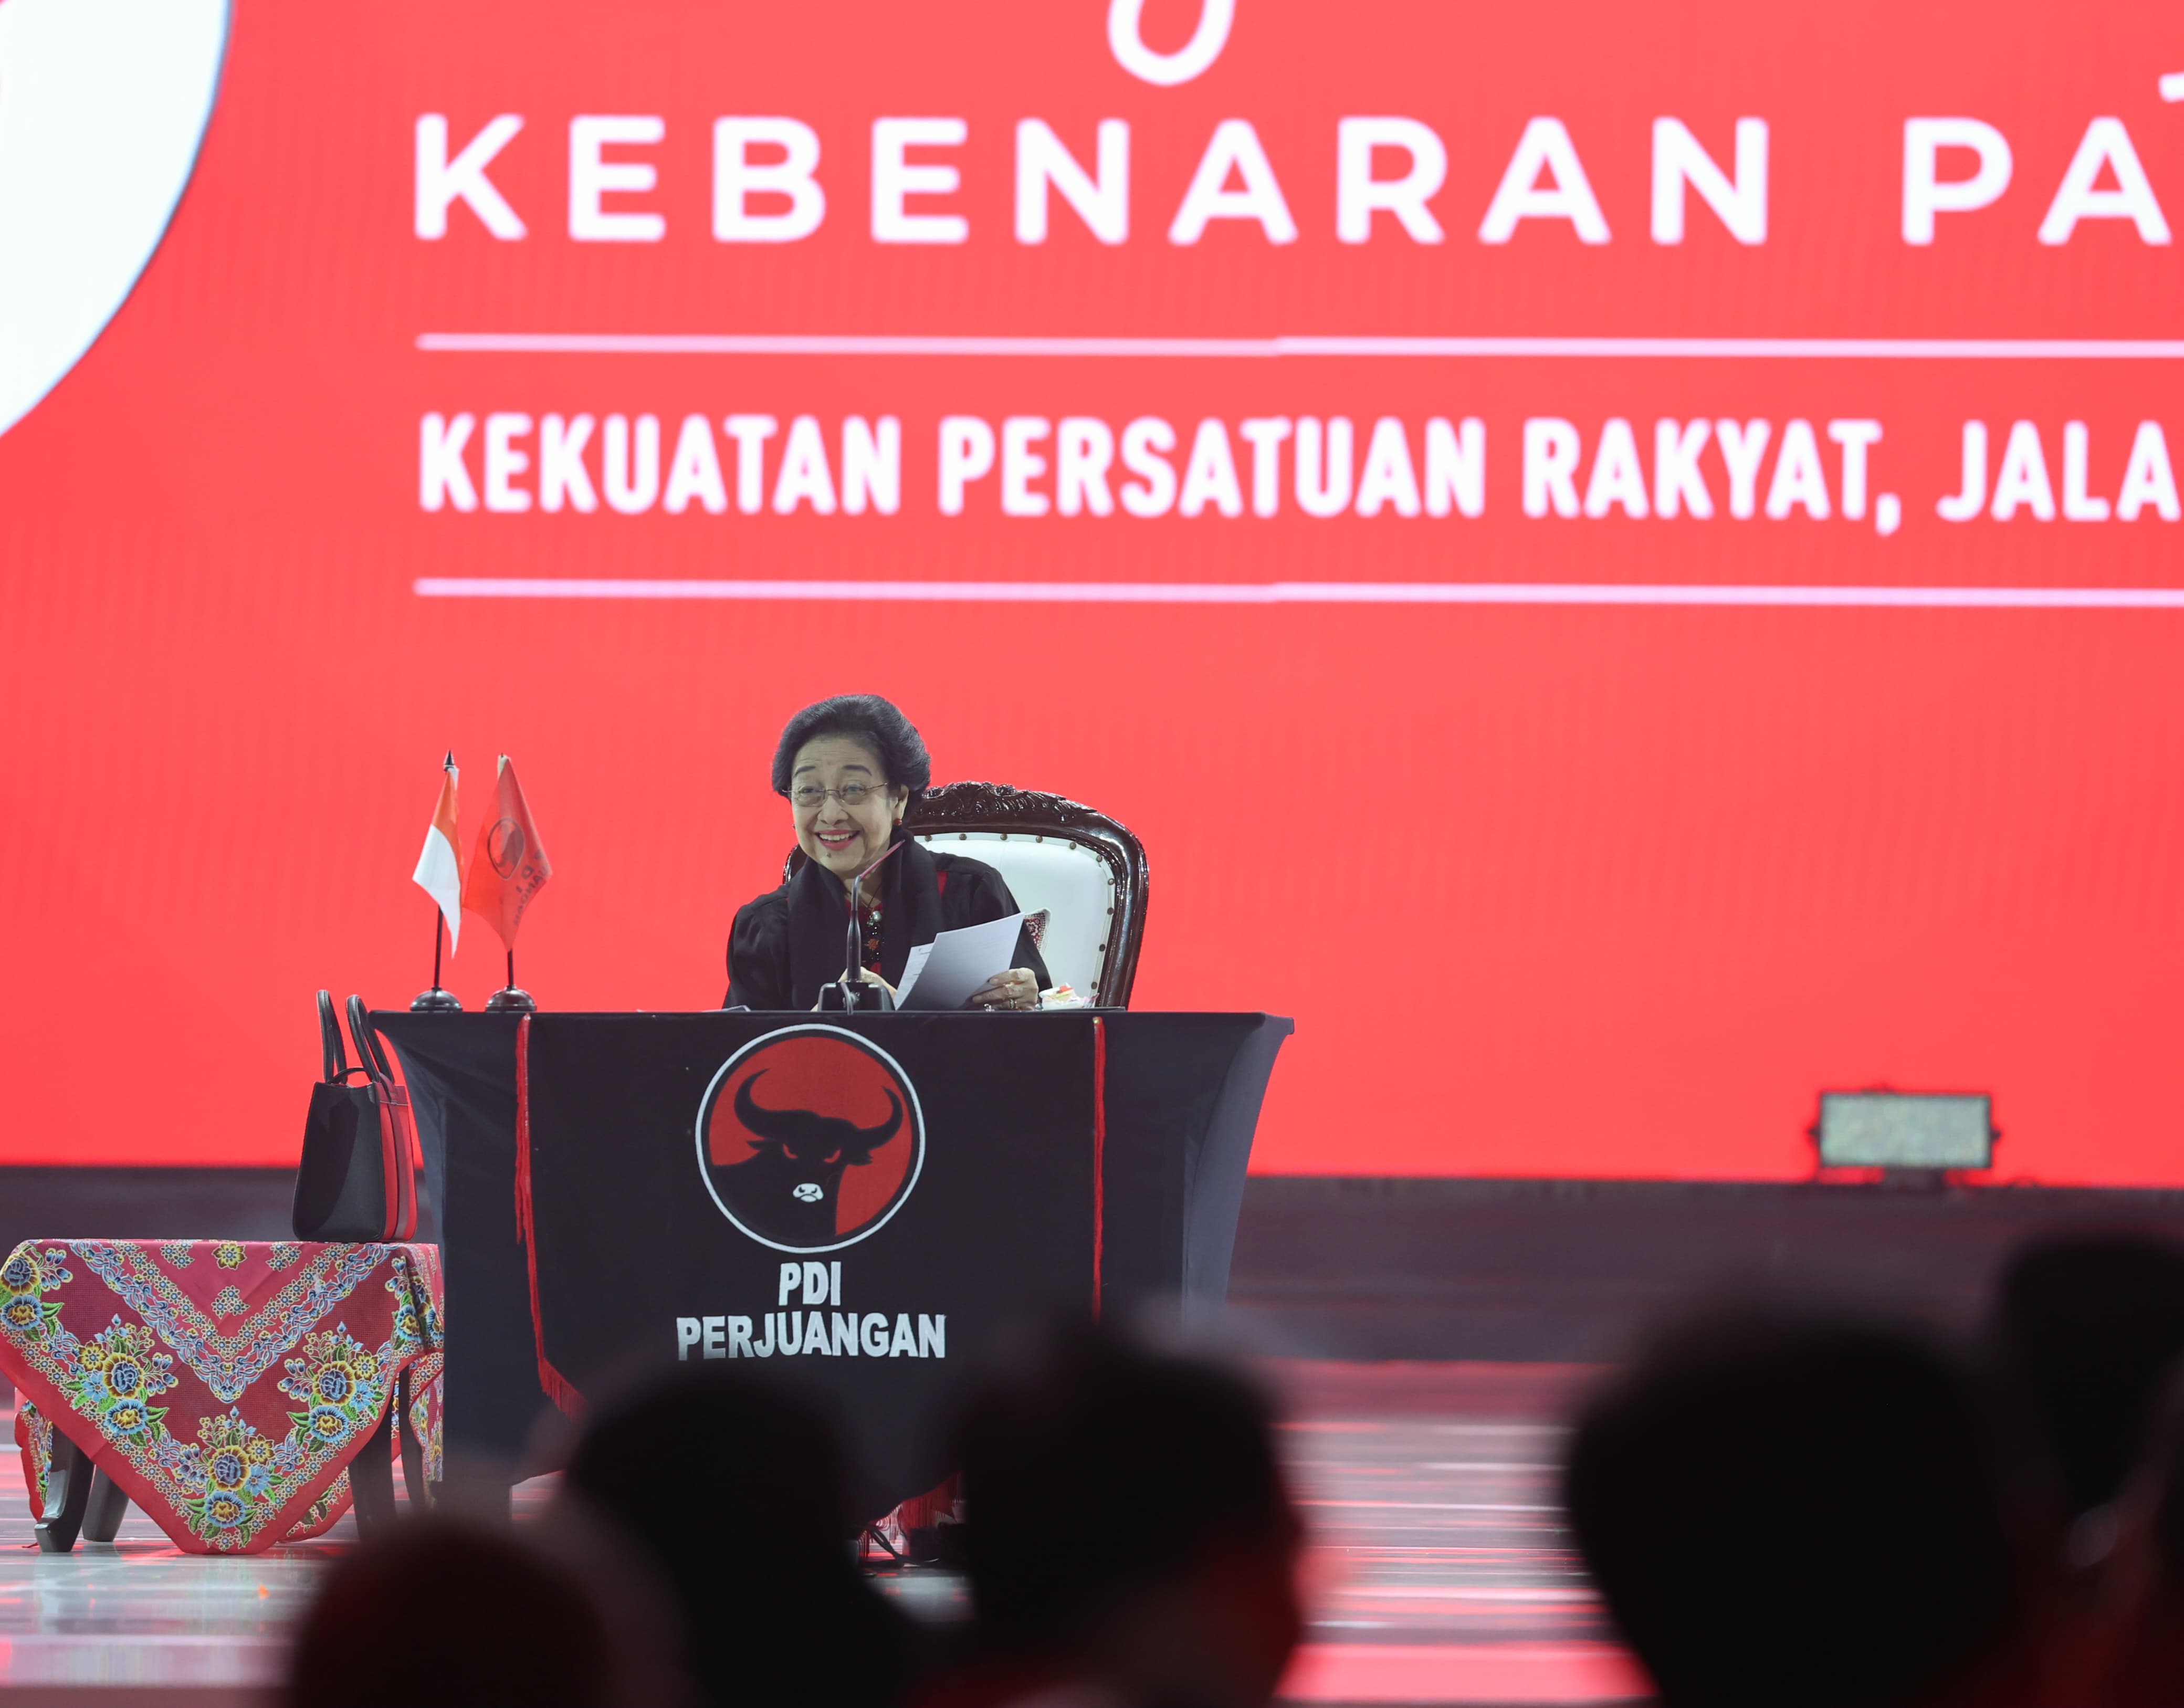 PPP, Hanura, dan Perindo Tetap Setia Dengan PDI Perjuangan, Megawati: Begitulah Tata Krama Yang Seharusnya